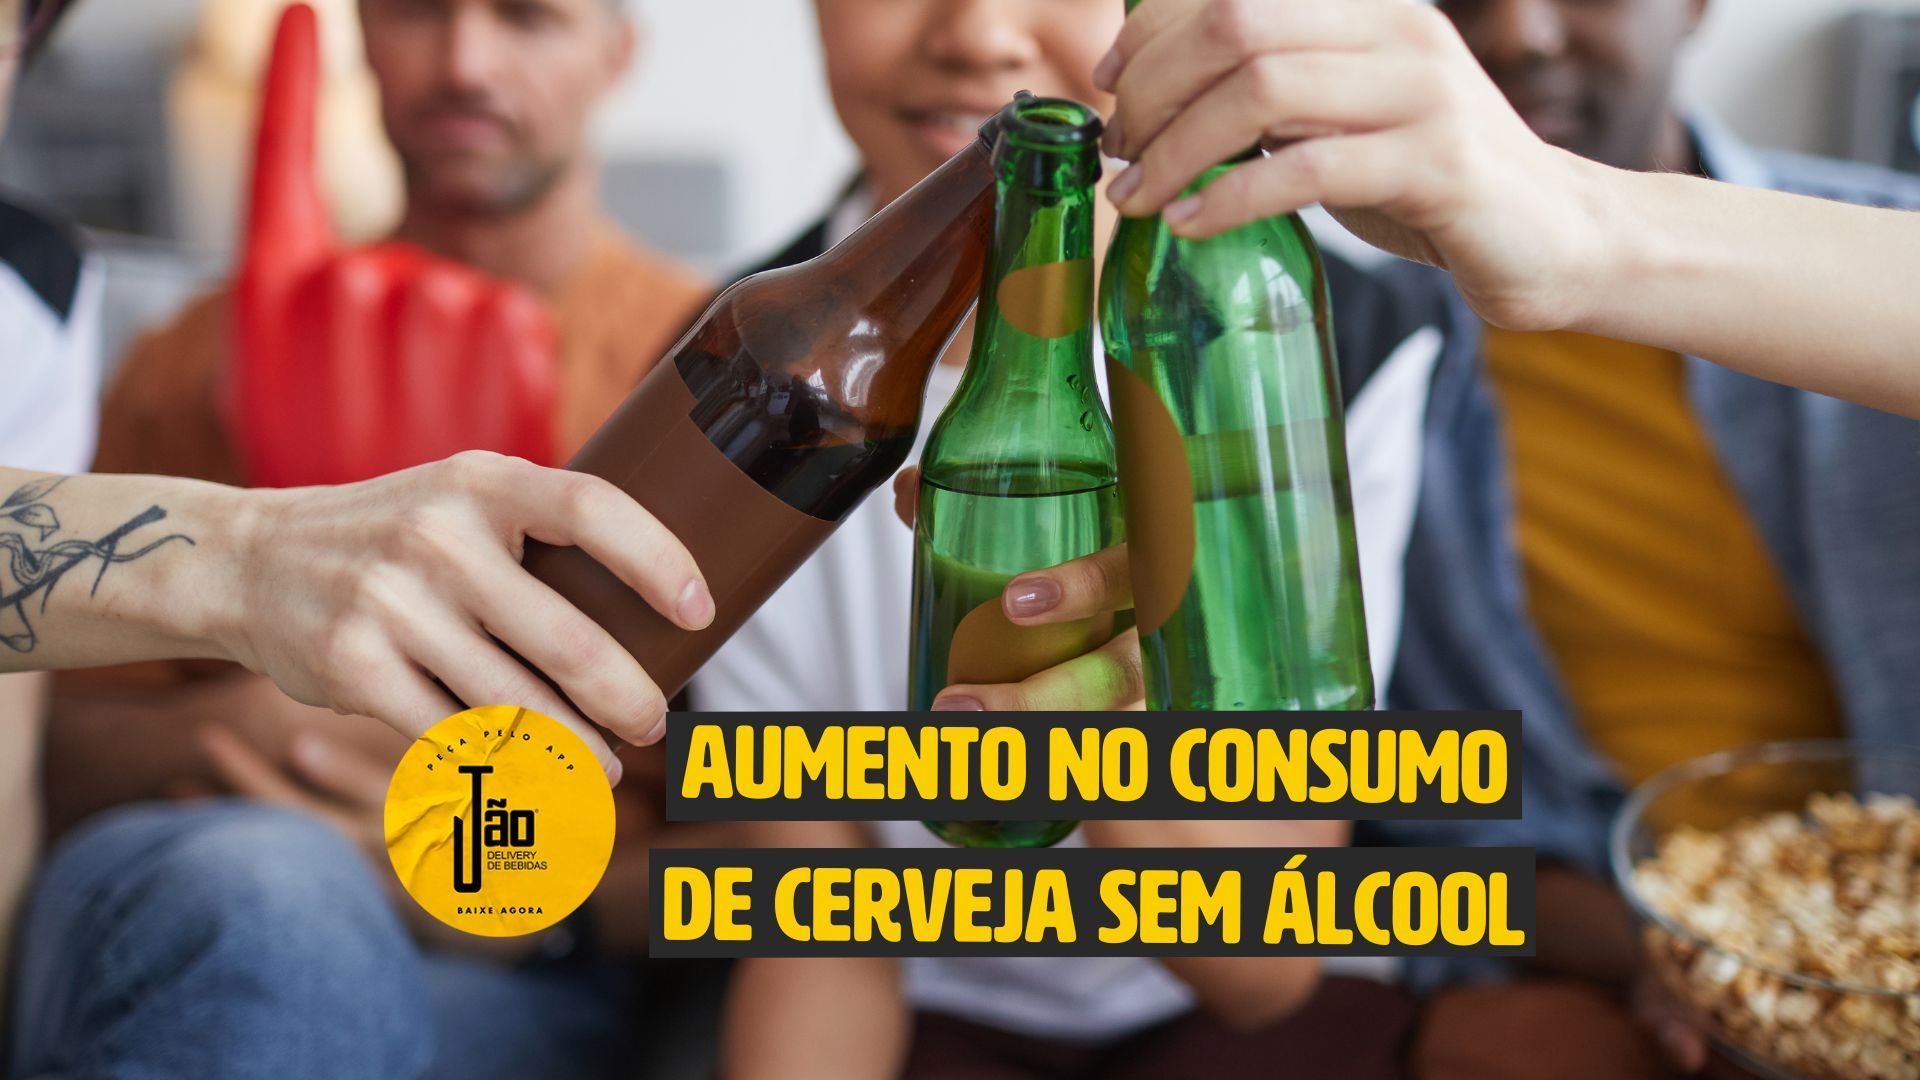 O aumento elevado do consumo das cervejas sem álcool